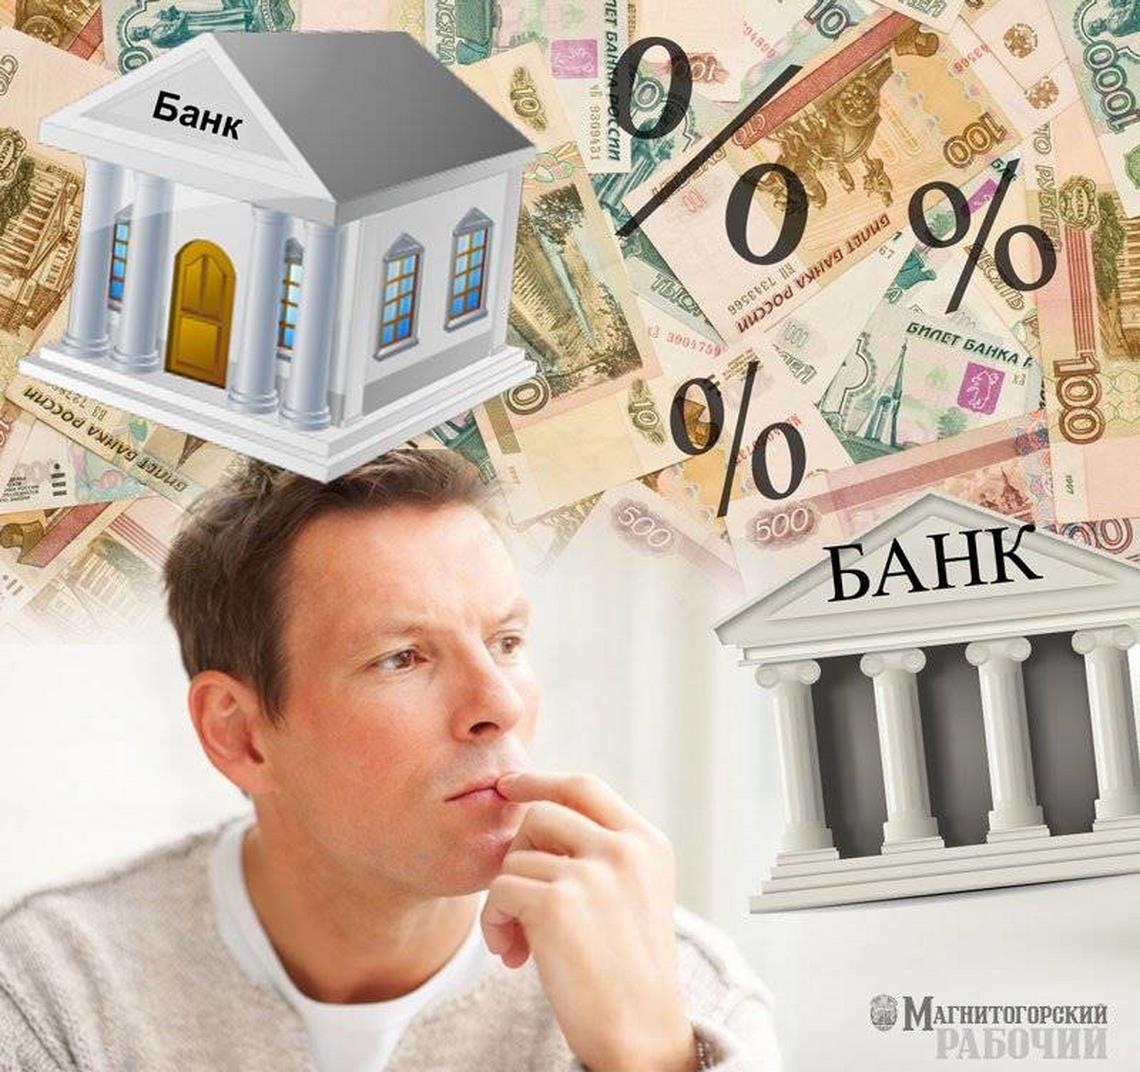 «Известия» узнали о проблеме с обслуживанием долга у 7 млн россиян